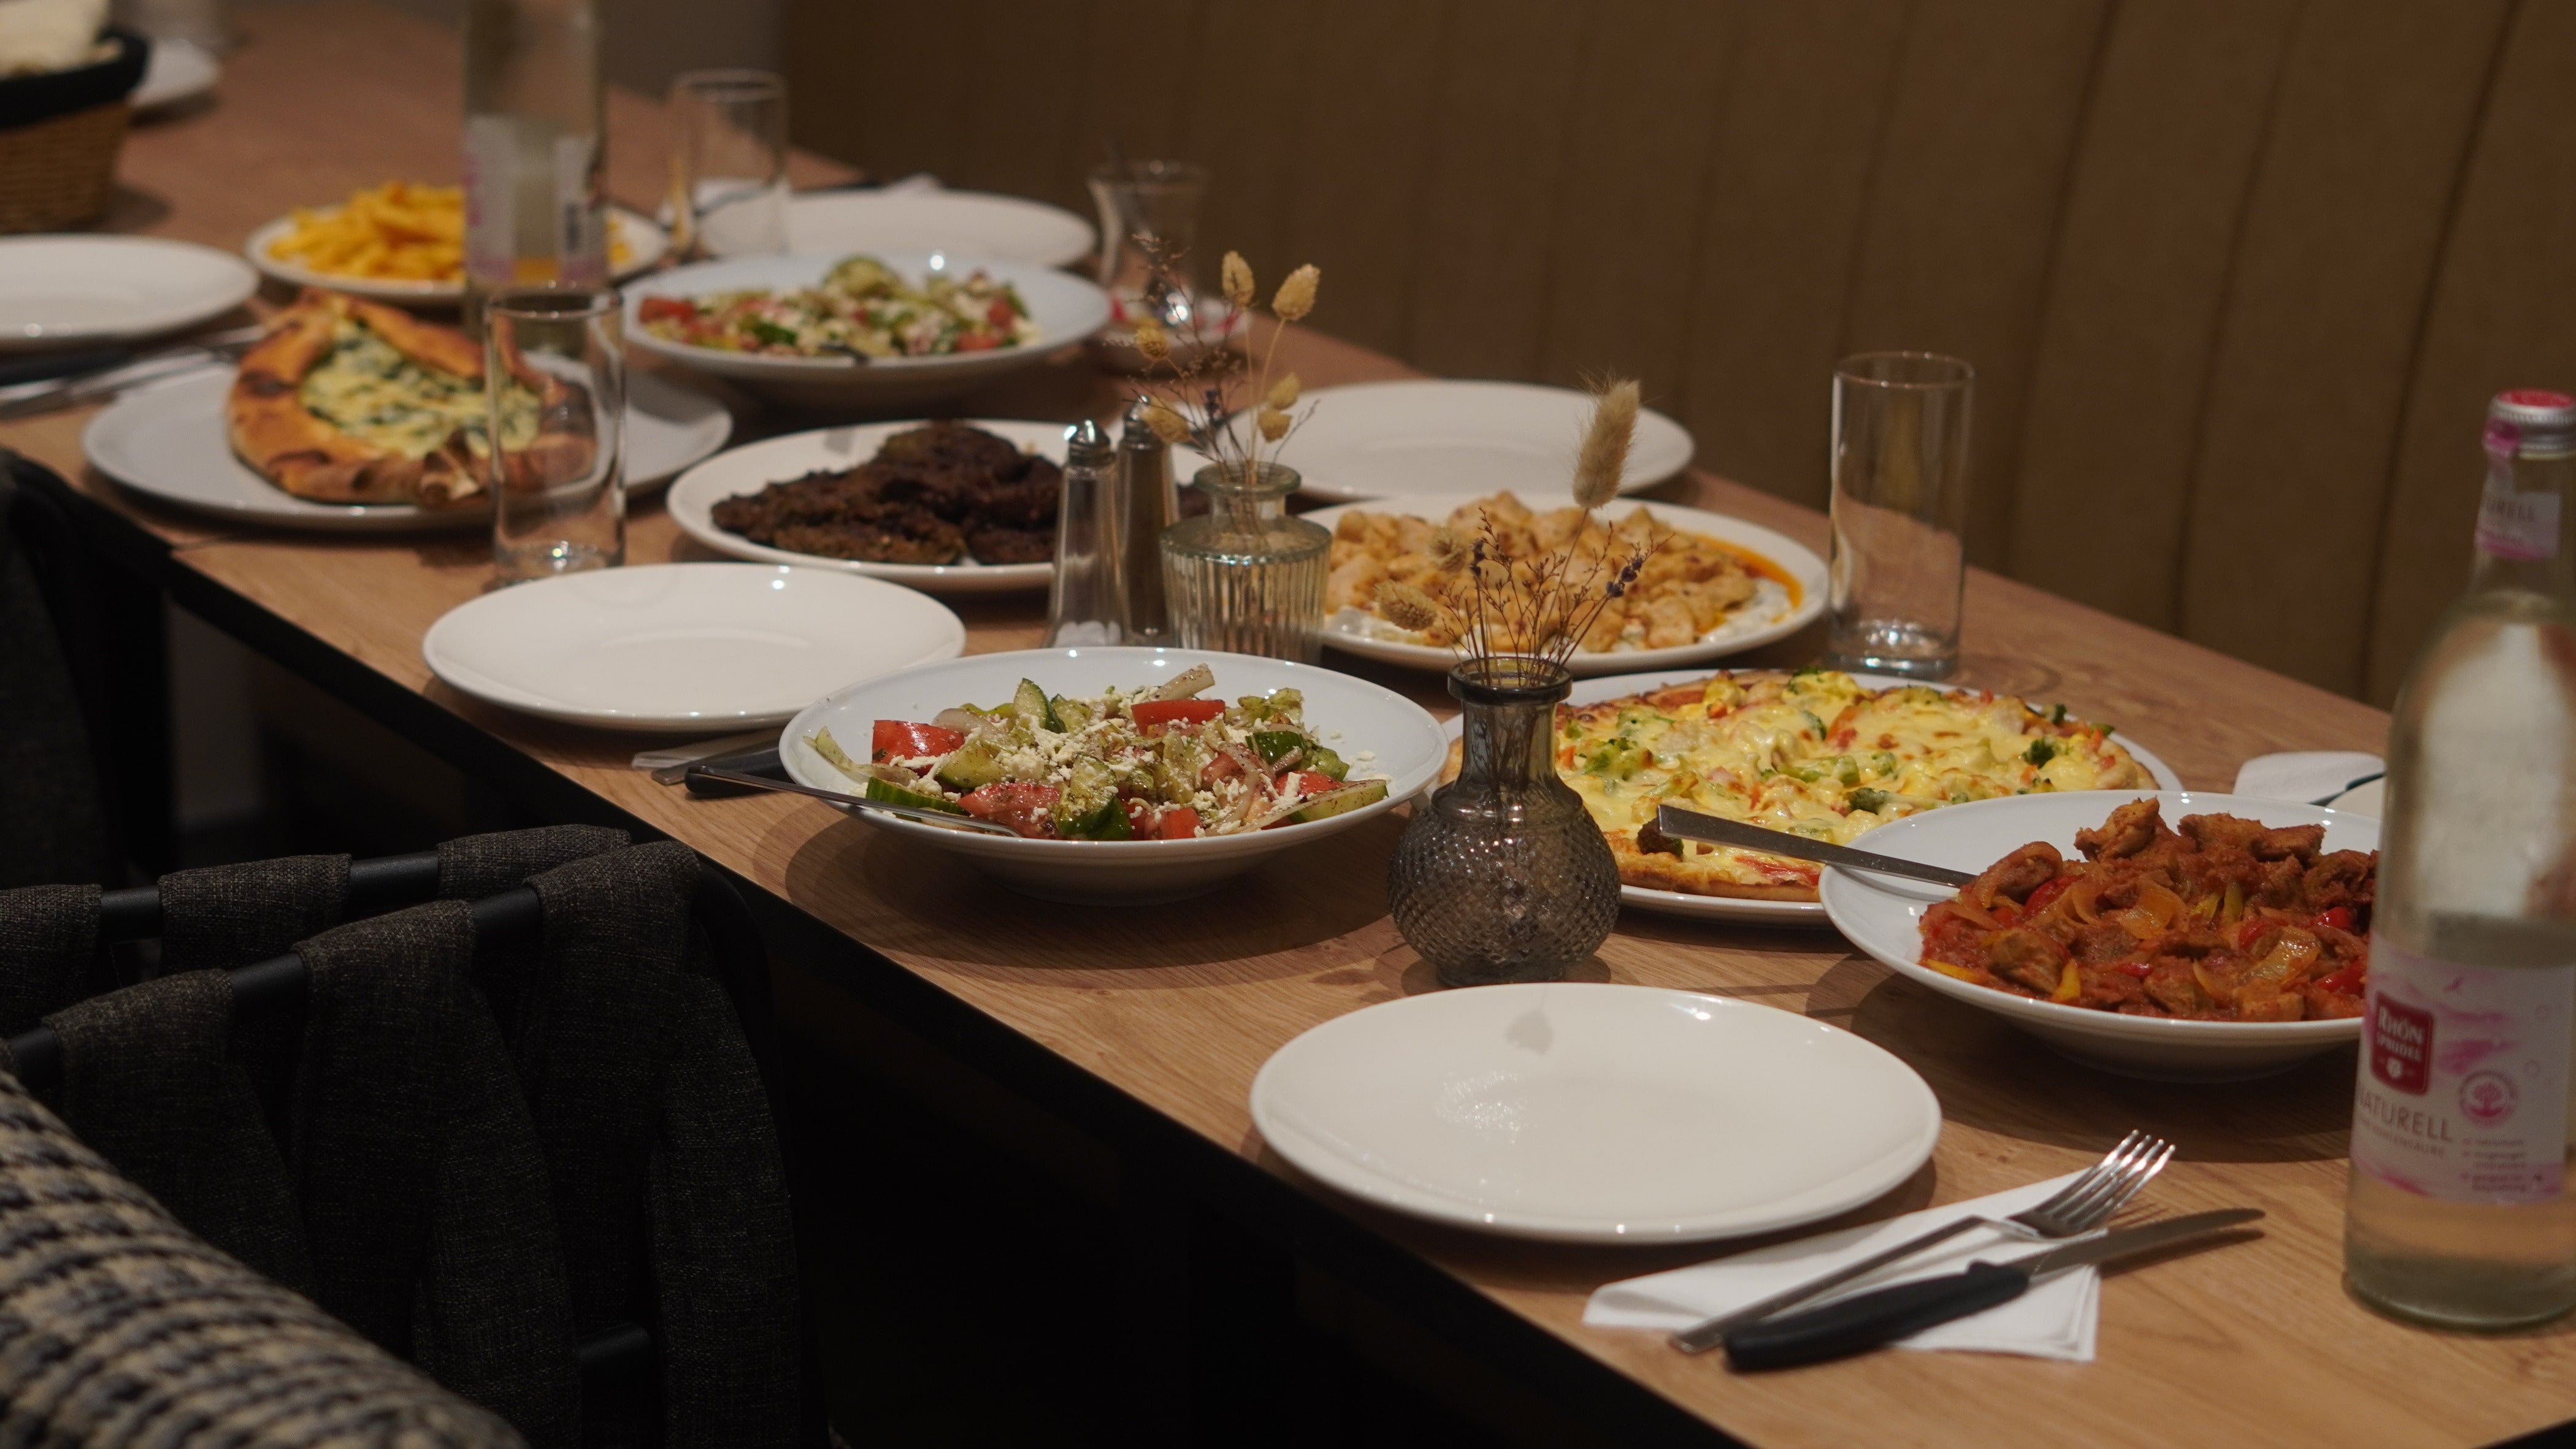 Eiche-Farbiger Tisch mit Teller und Besteck gefüllt mit türkischem Essen (sieht aus wie Catering) Adana, Sac Kavurma & Salat in einem türkischen Cafe Restaurant